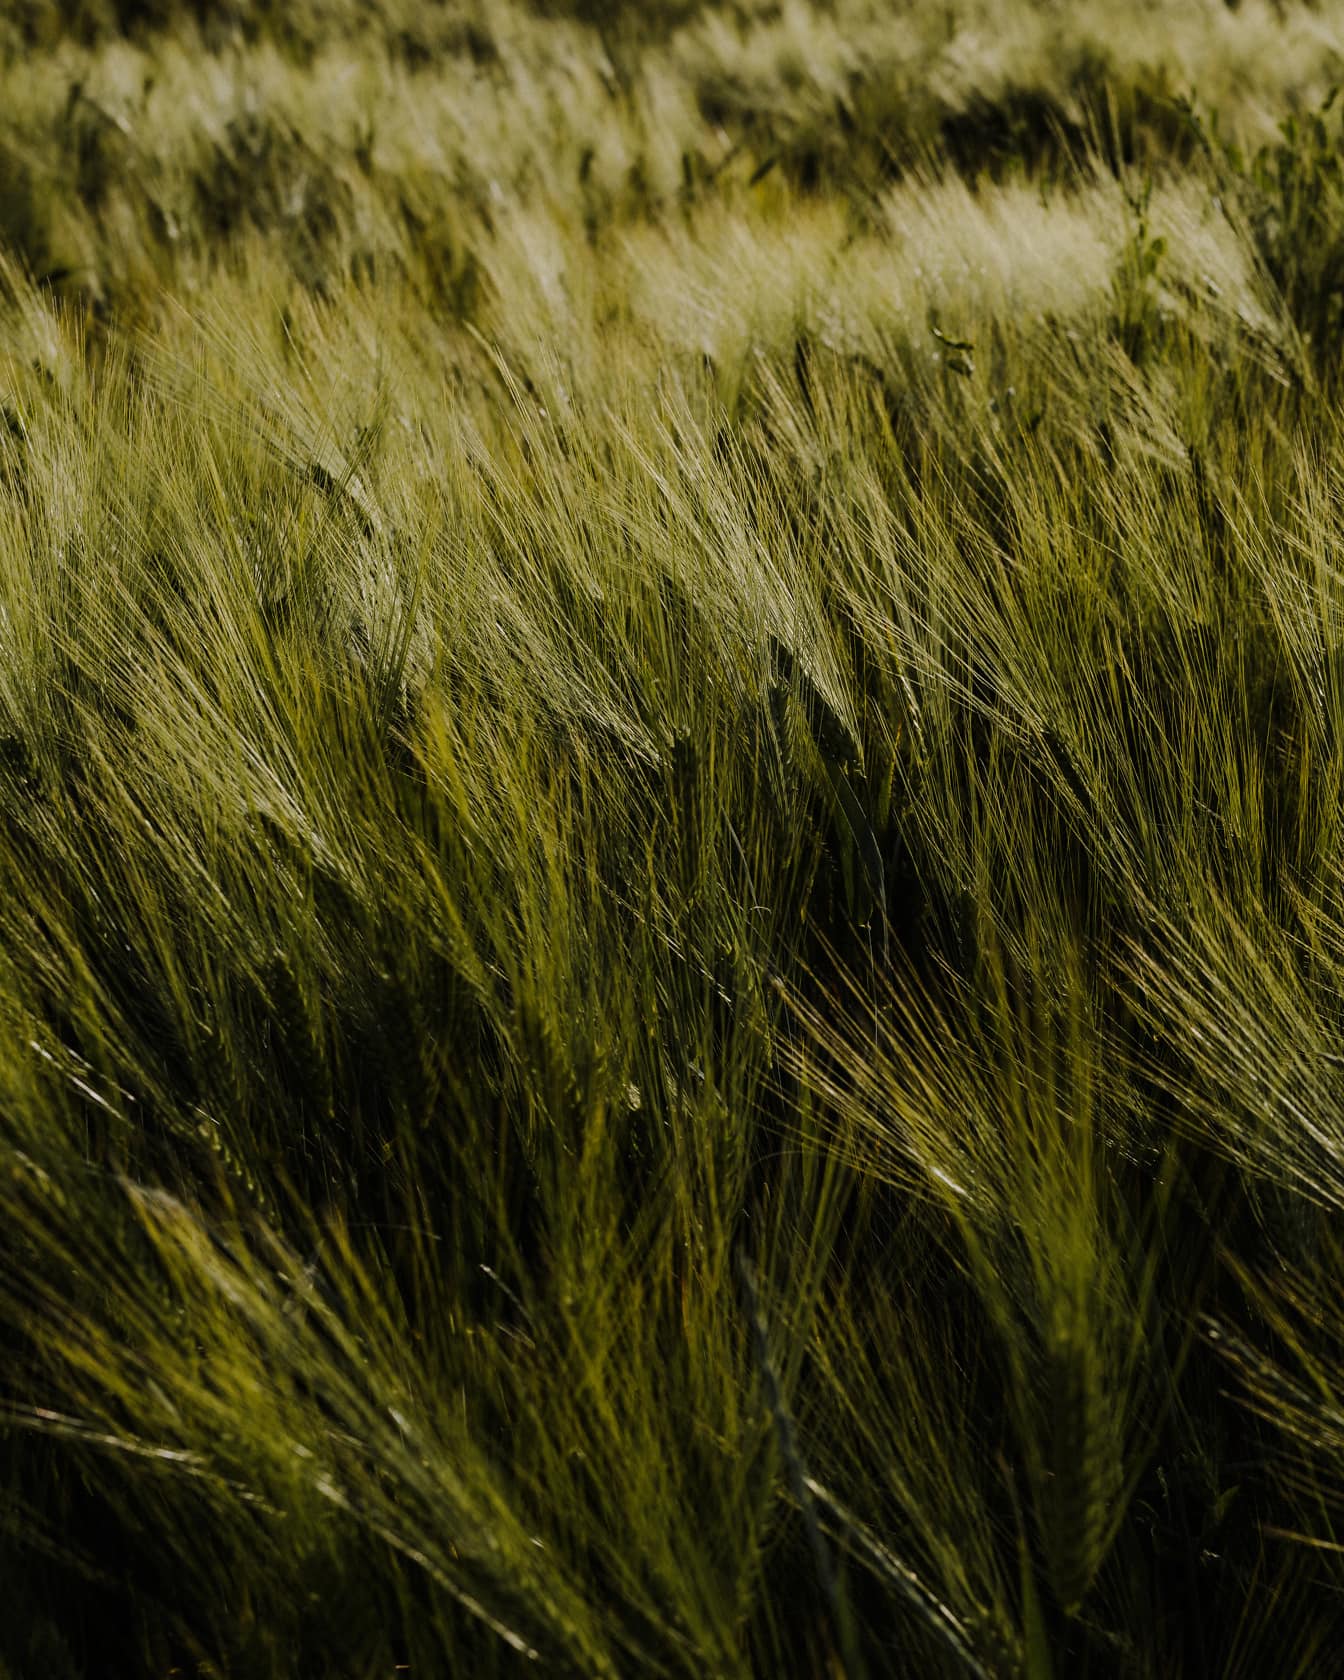 深绿色有机大麦草本在农业领域的应用